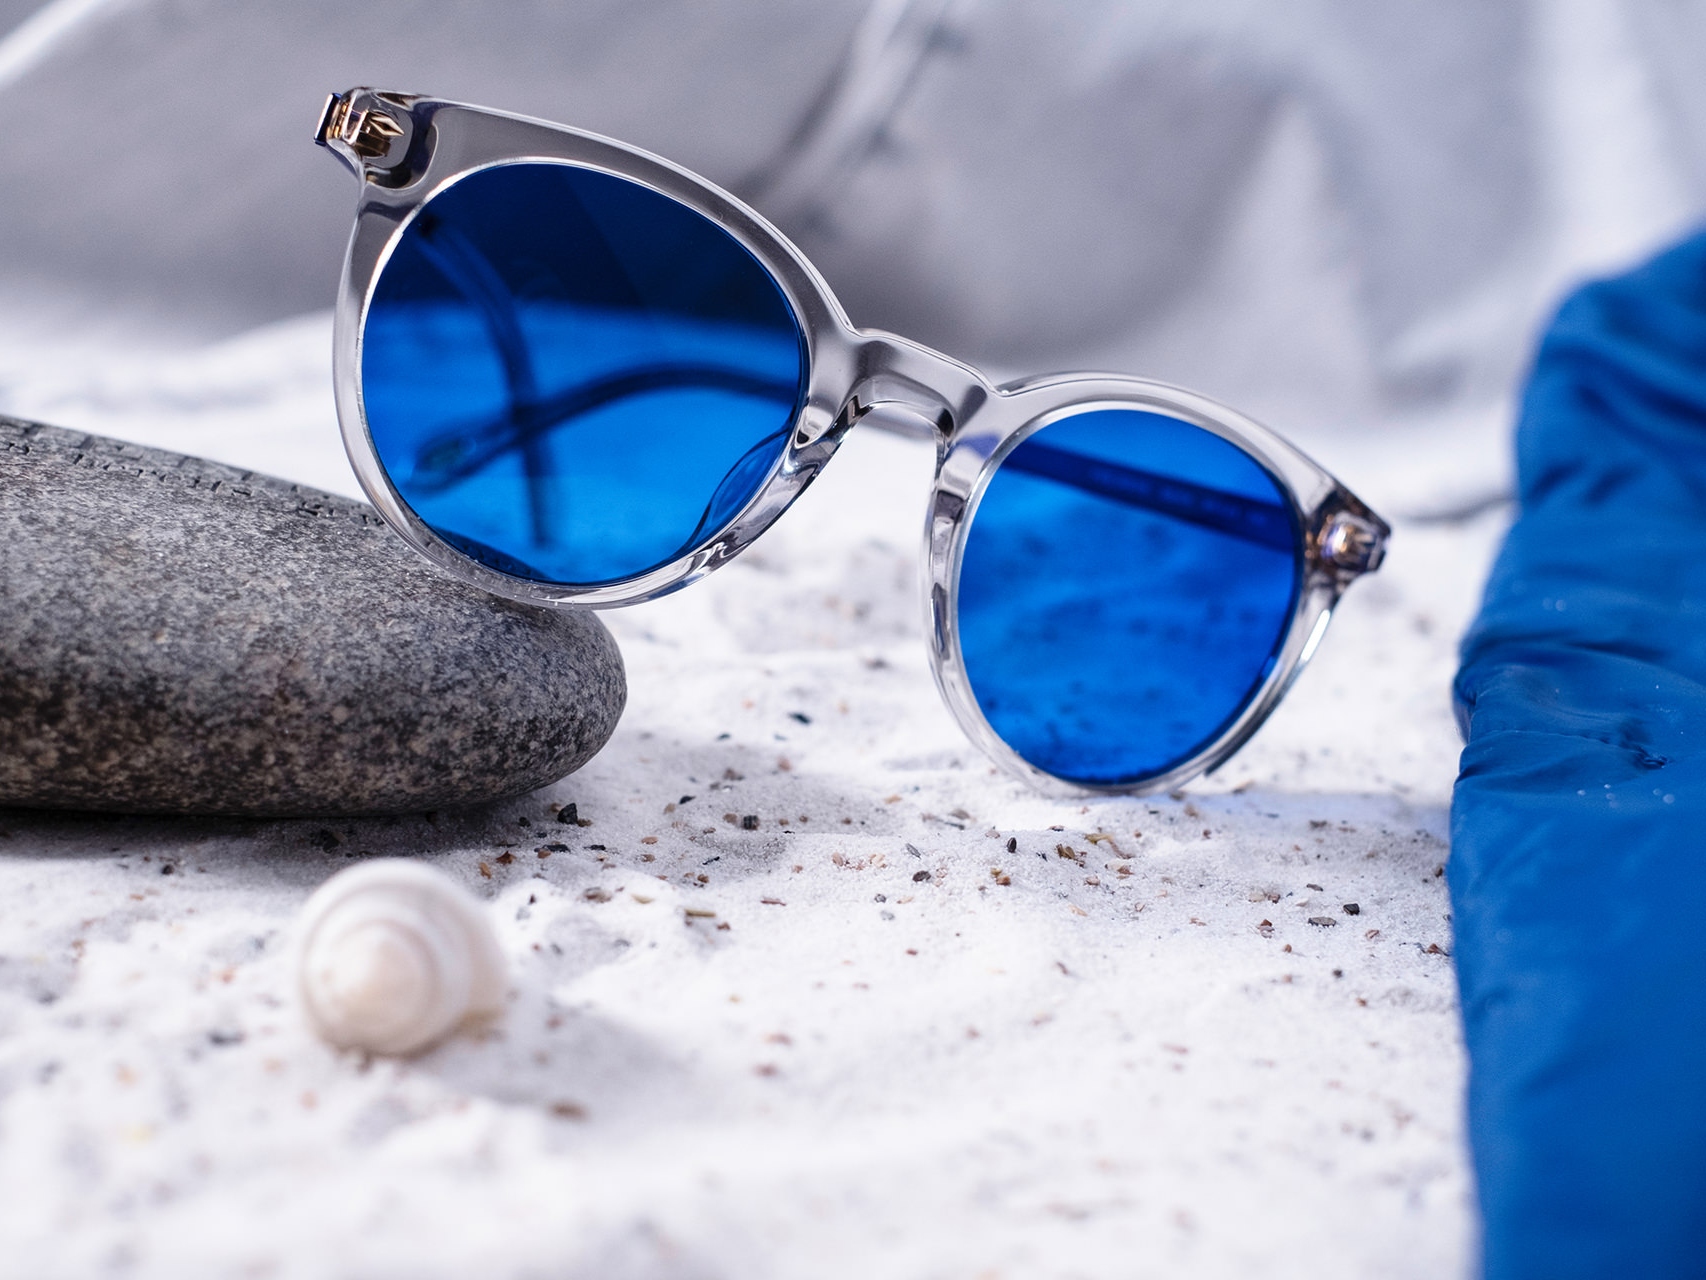 Bilde av et par solbriller med blå fargetone halvveis lagt på en stein